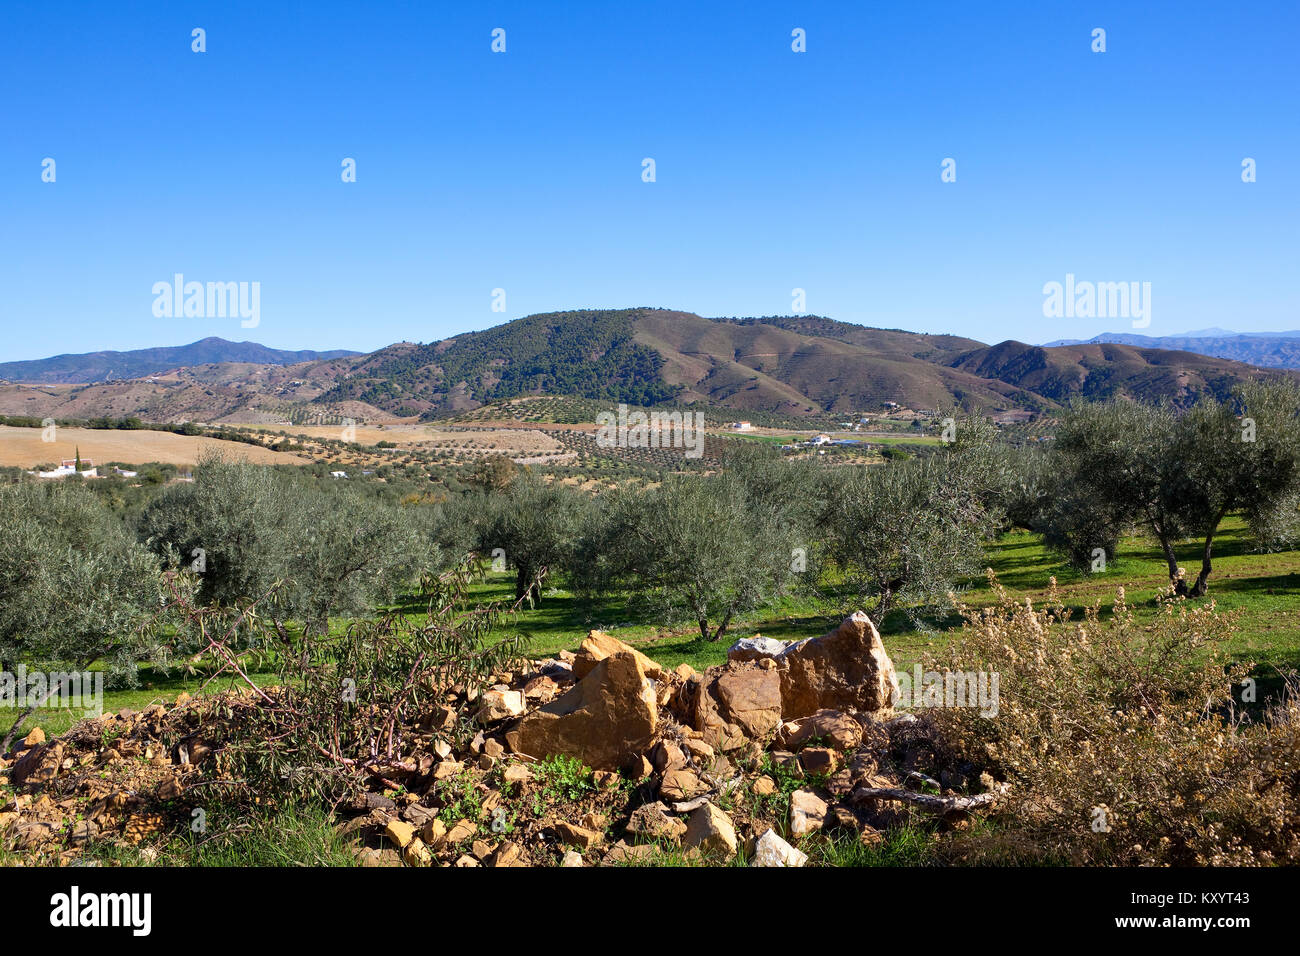 Un arido andaluso scena agricola con montagne ricche di boschi e uliveti su terreno sabbioso sotto un cielo blu chiaro in Spagna Foto Stock